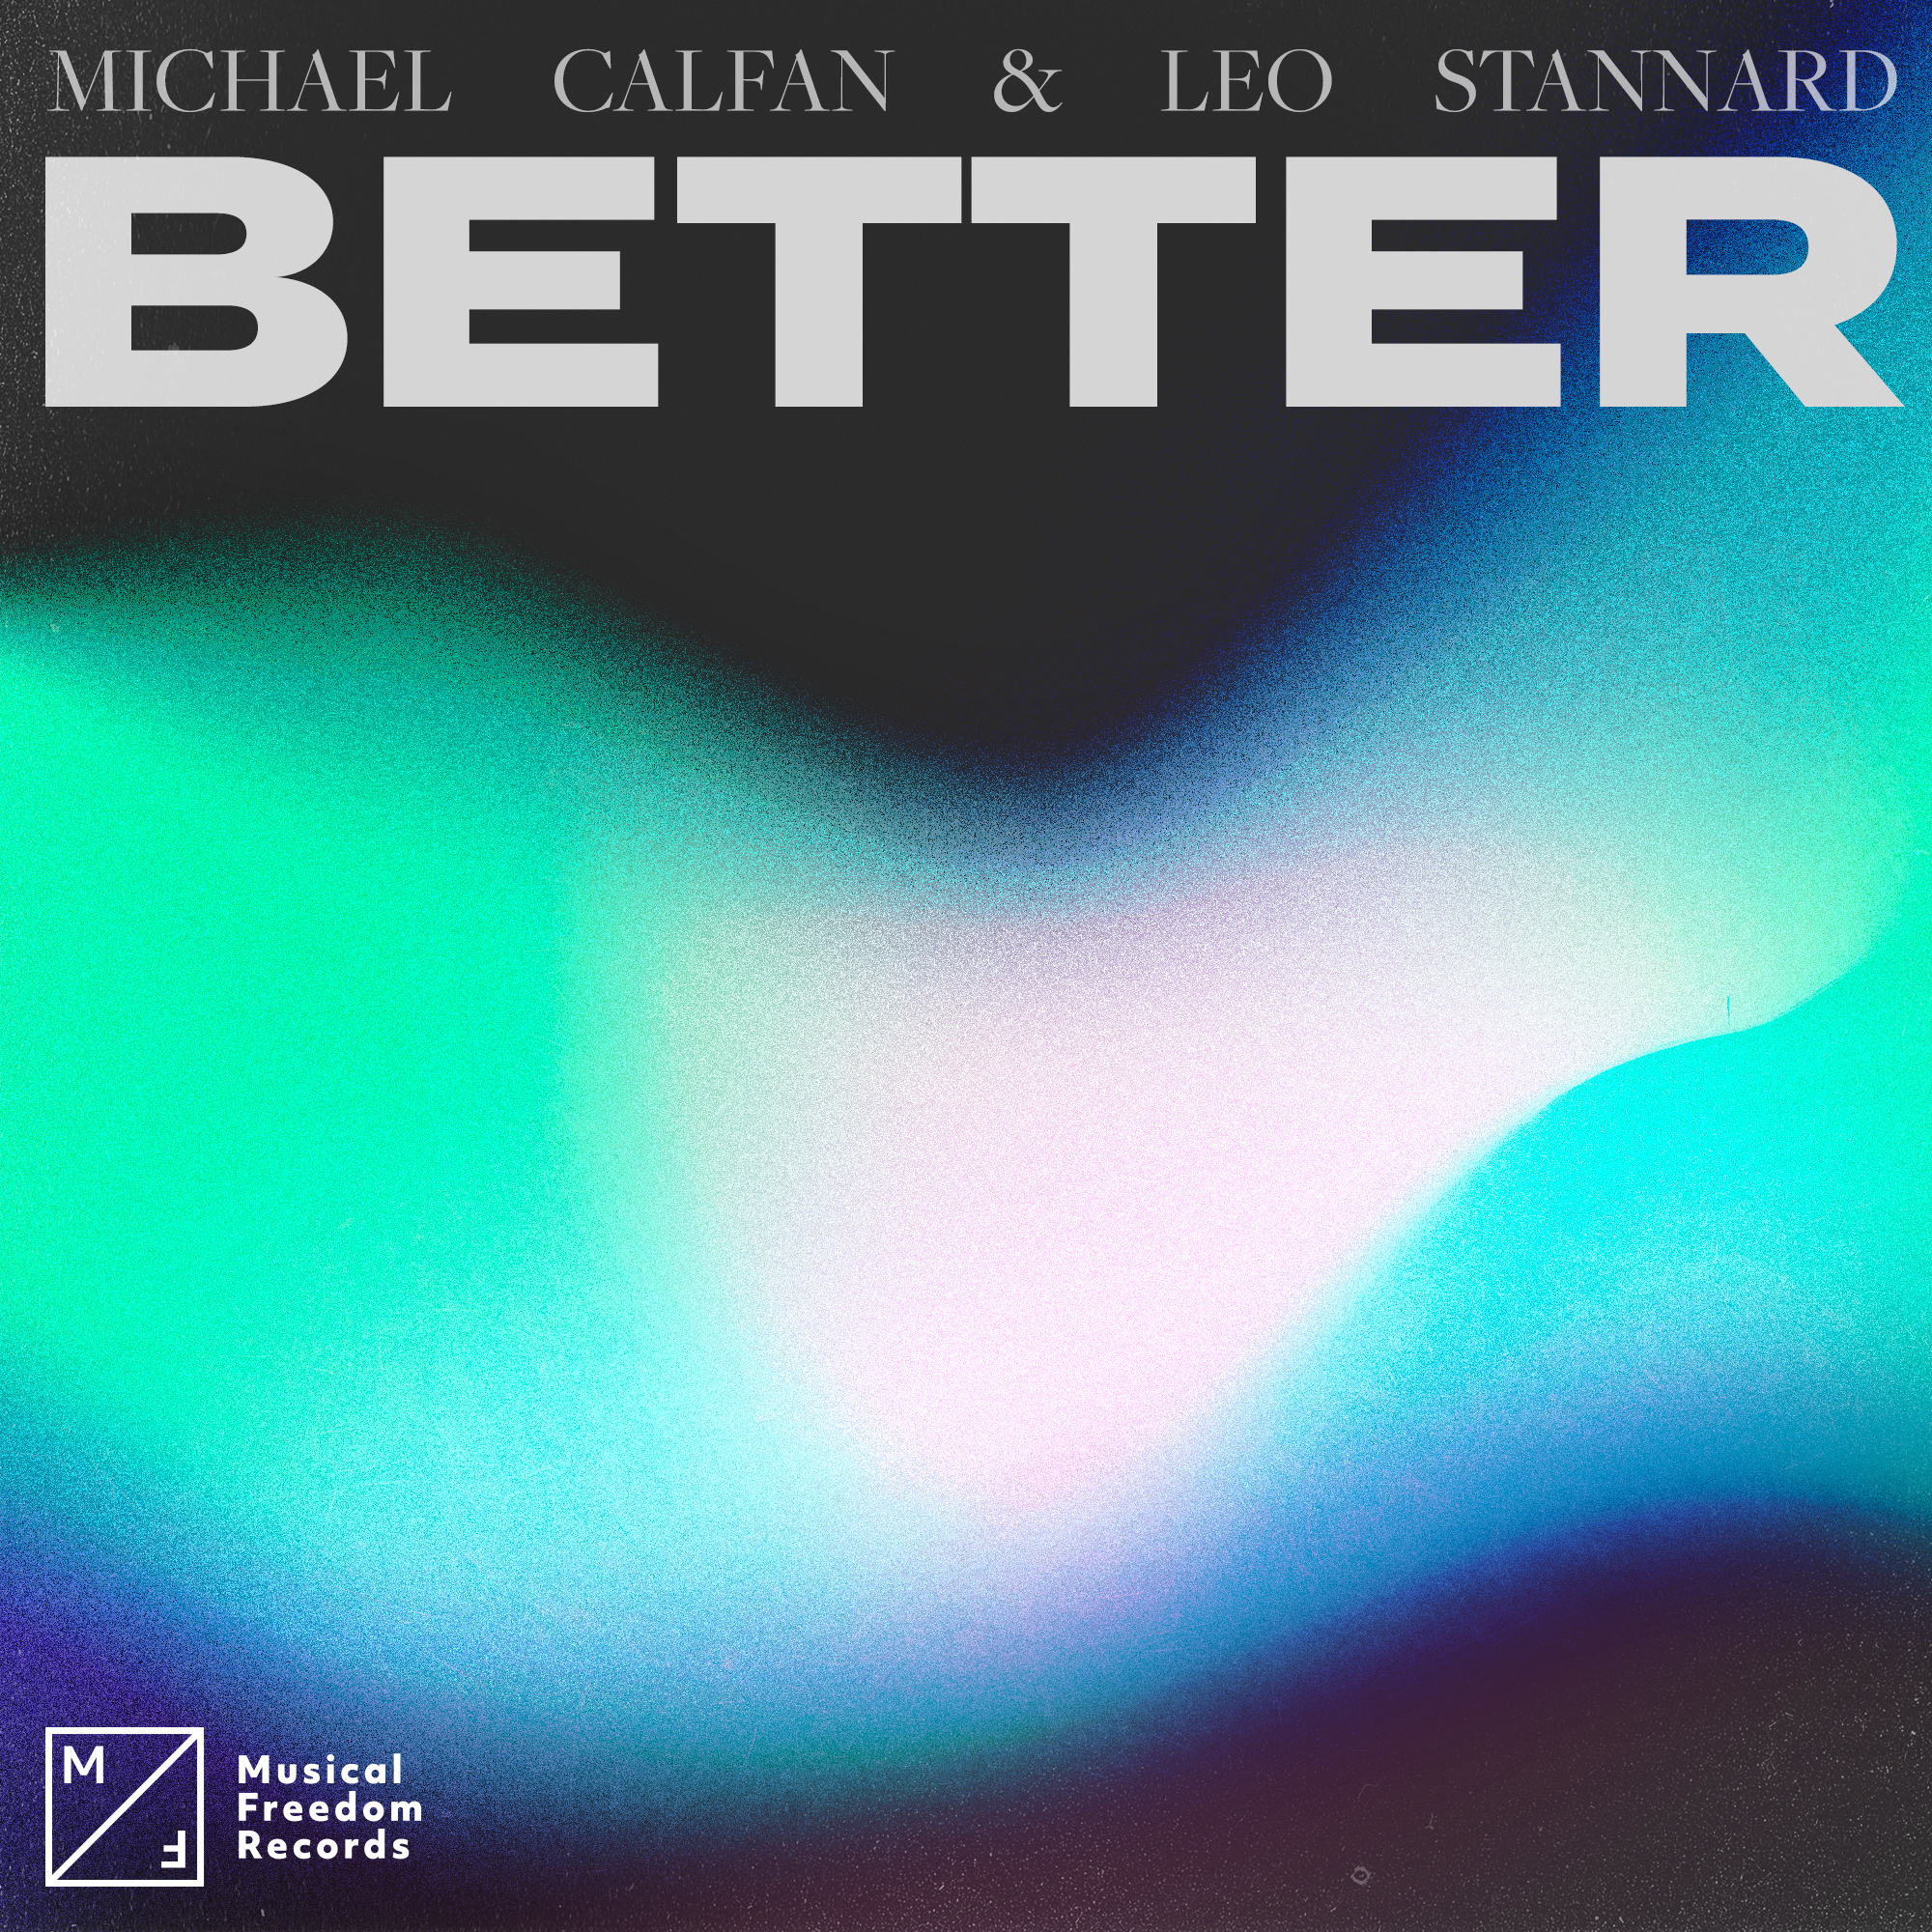 Michael Calfan & Leo Stannard — Better cover artwork